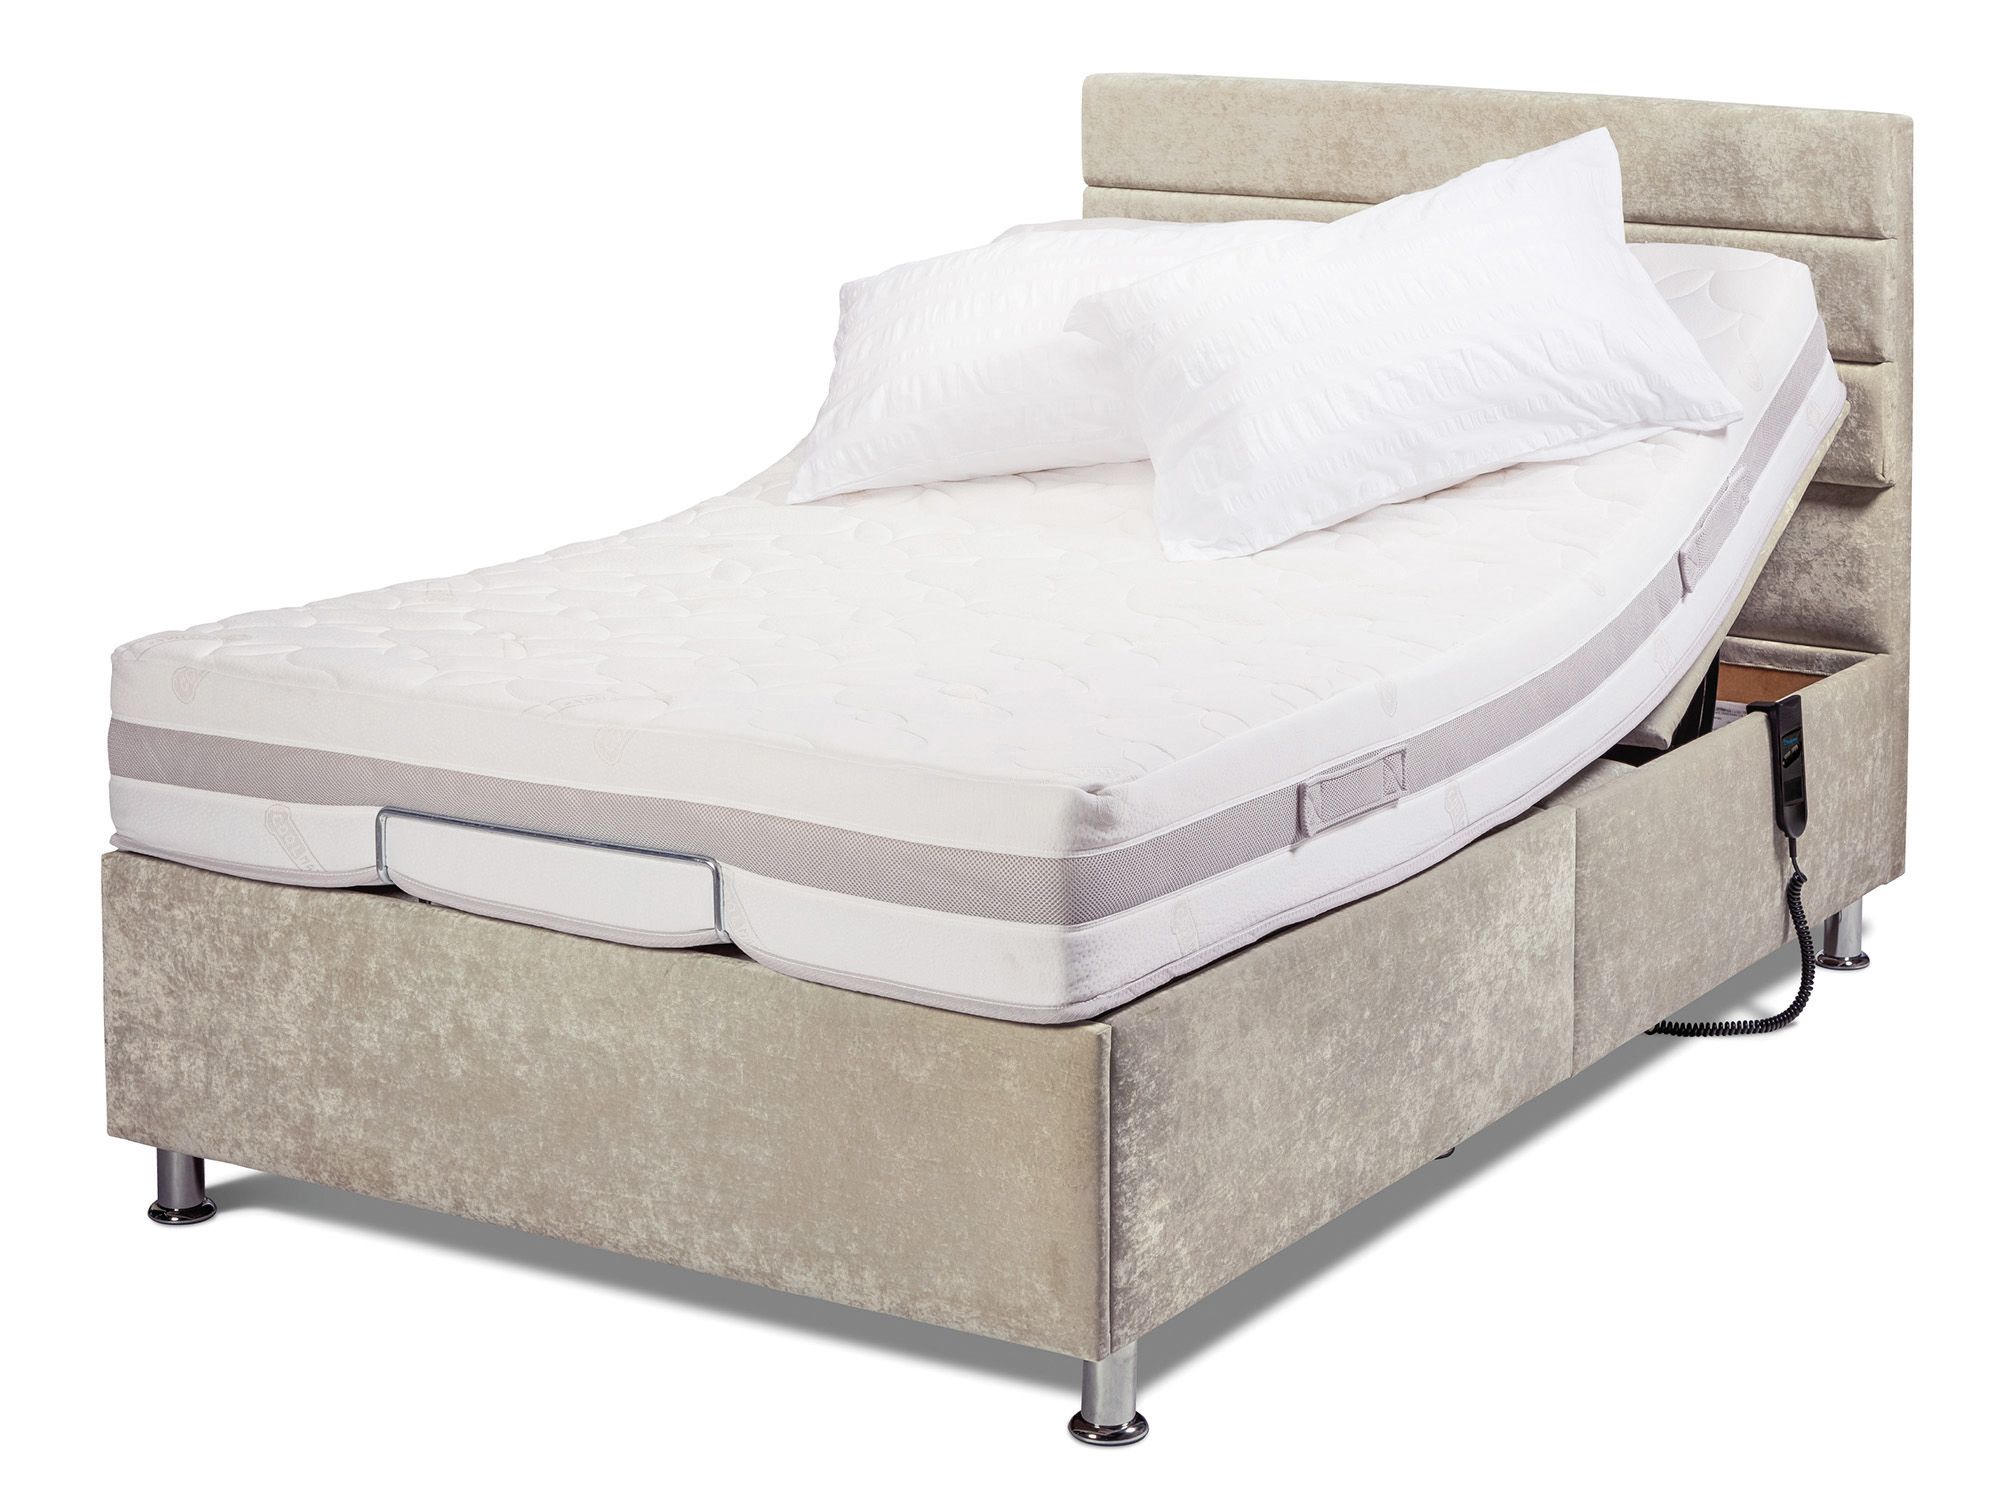 double bed mattress bathurst